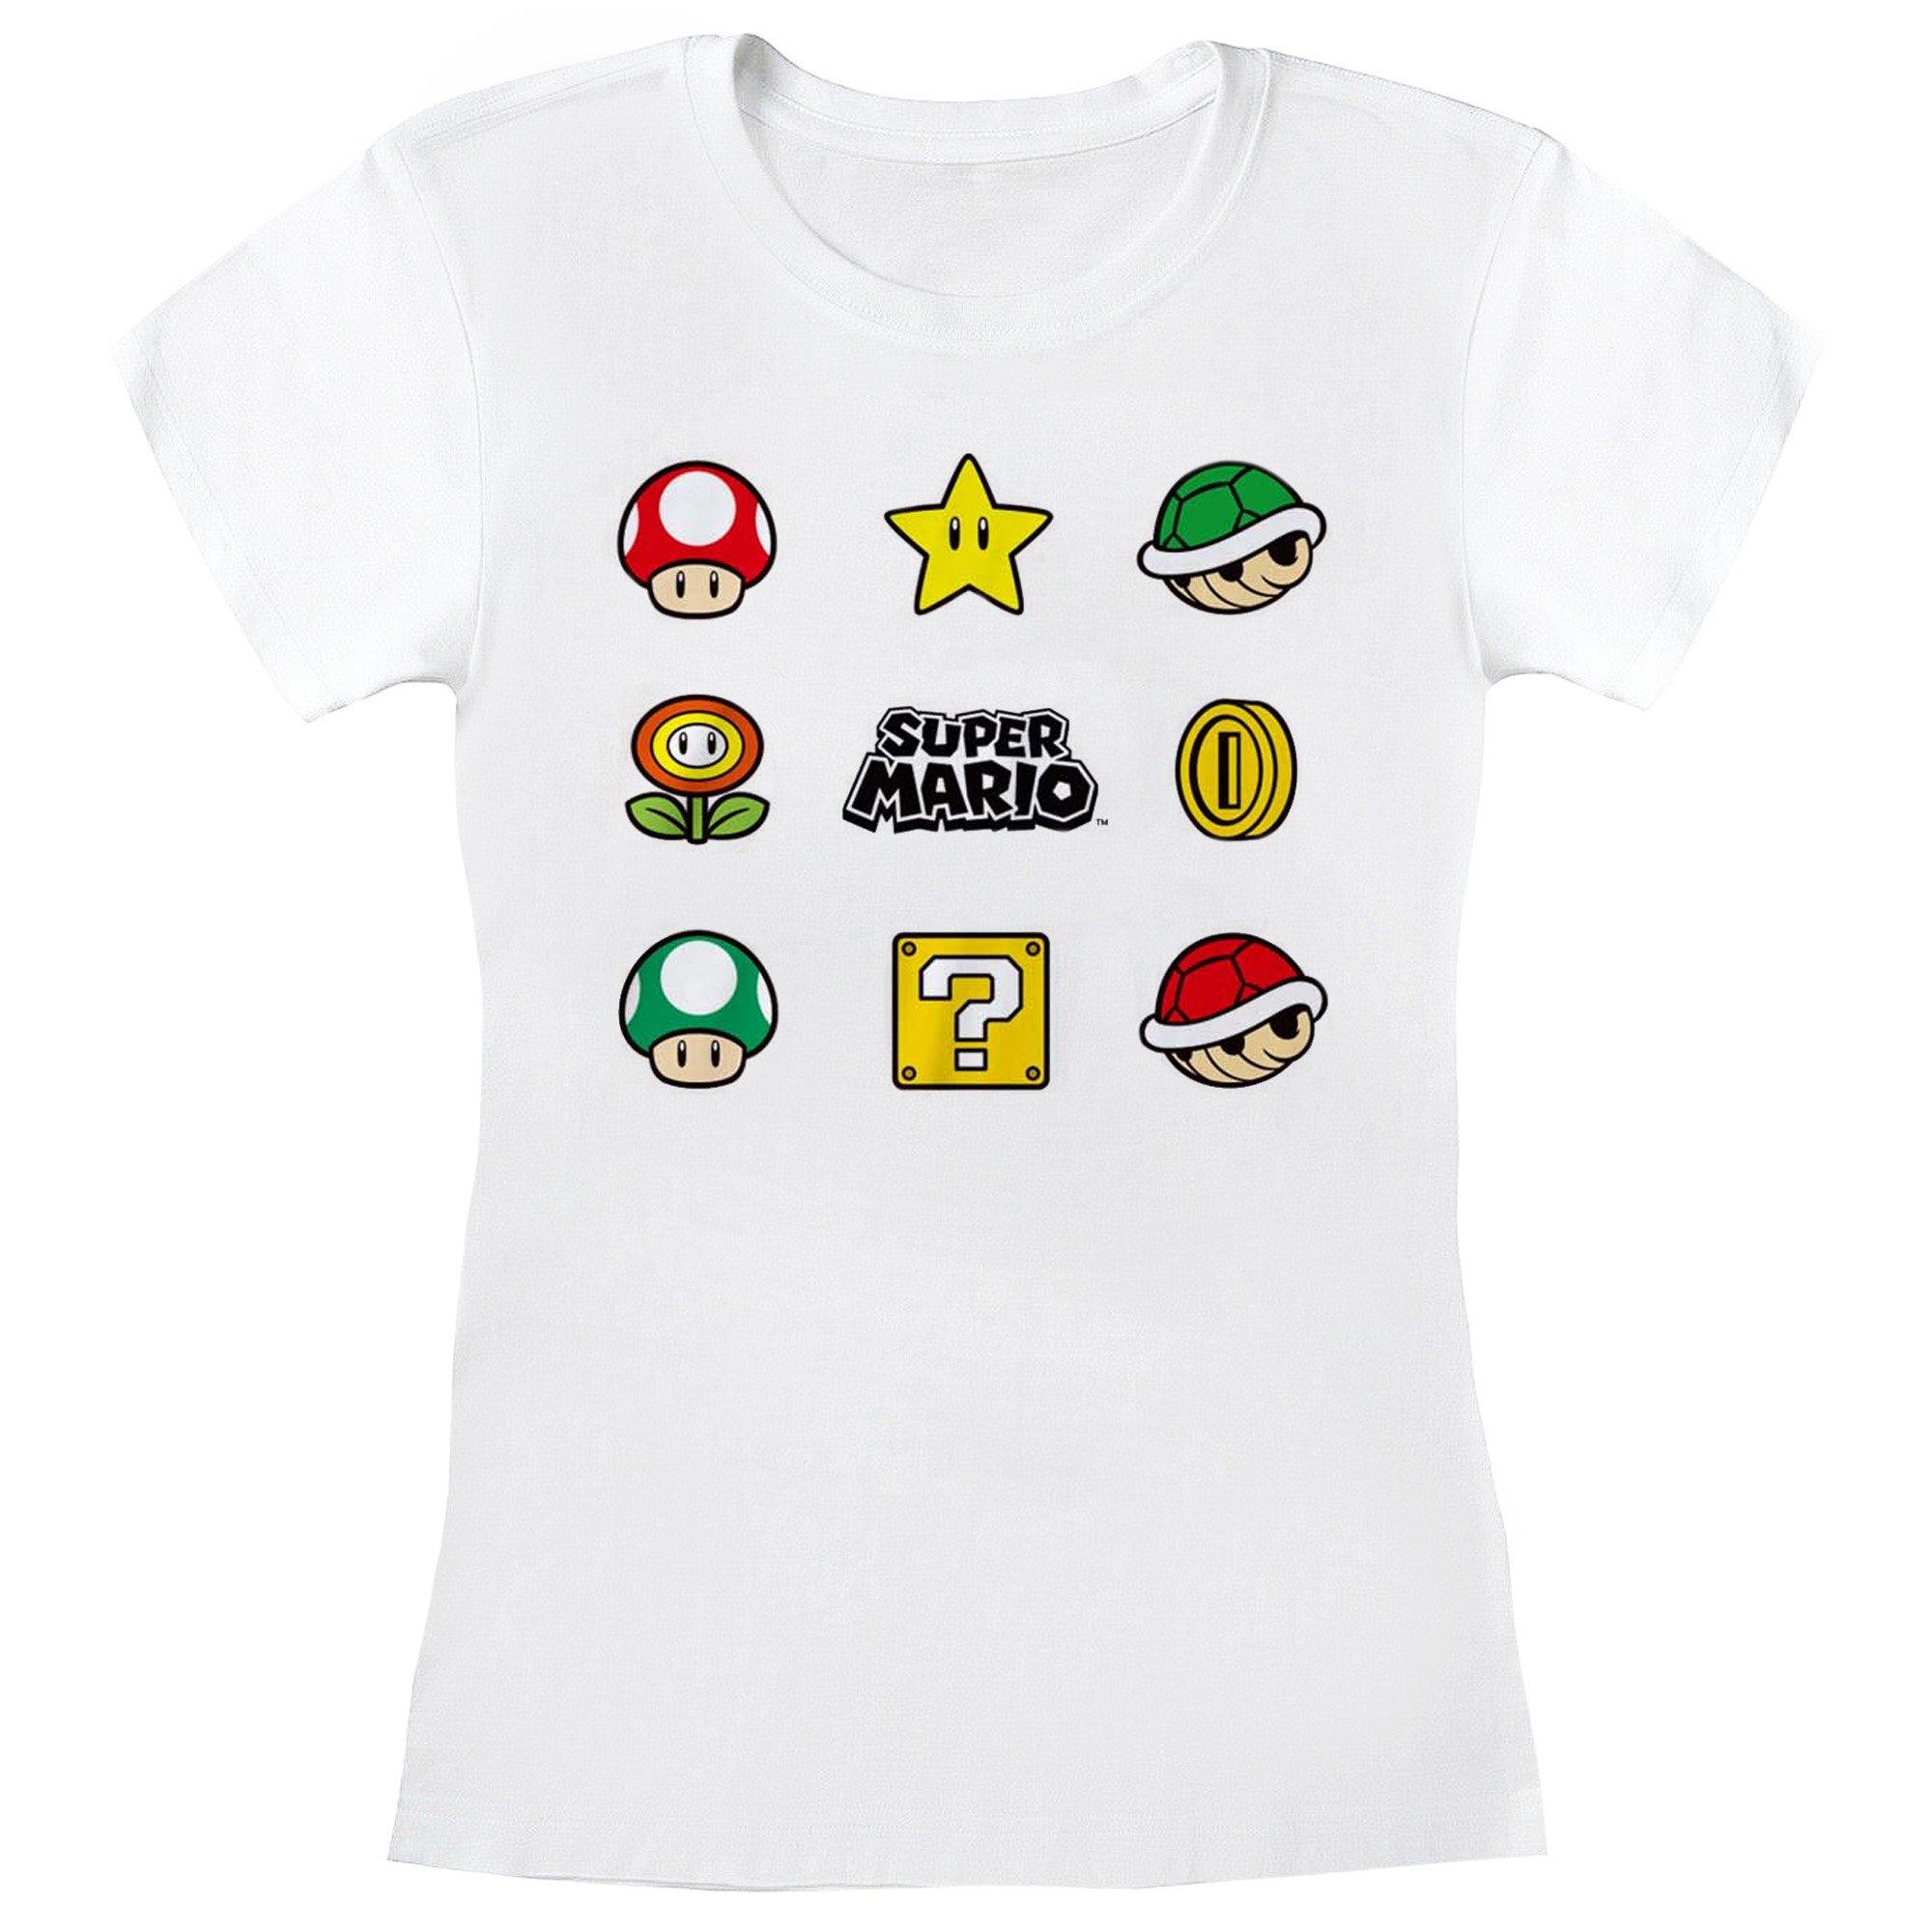 Super Mario  Items TShirt 